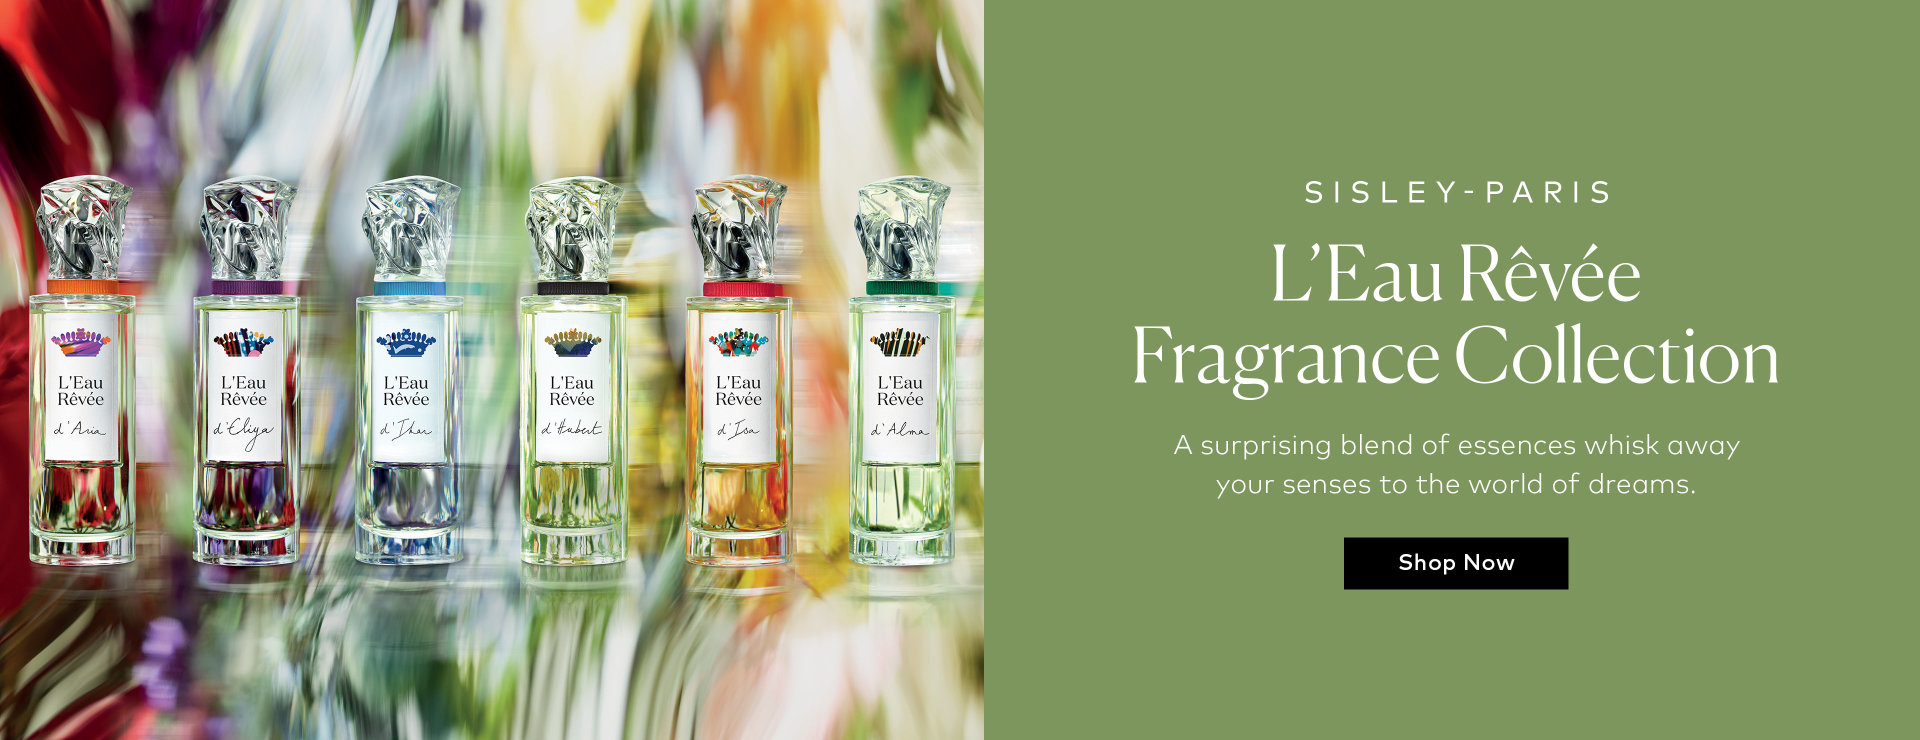 Shop the Sisley-Paris L'Eau Revee Fragrance Collection on Beautylish.com! 